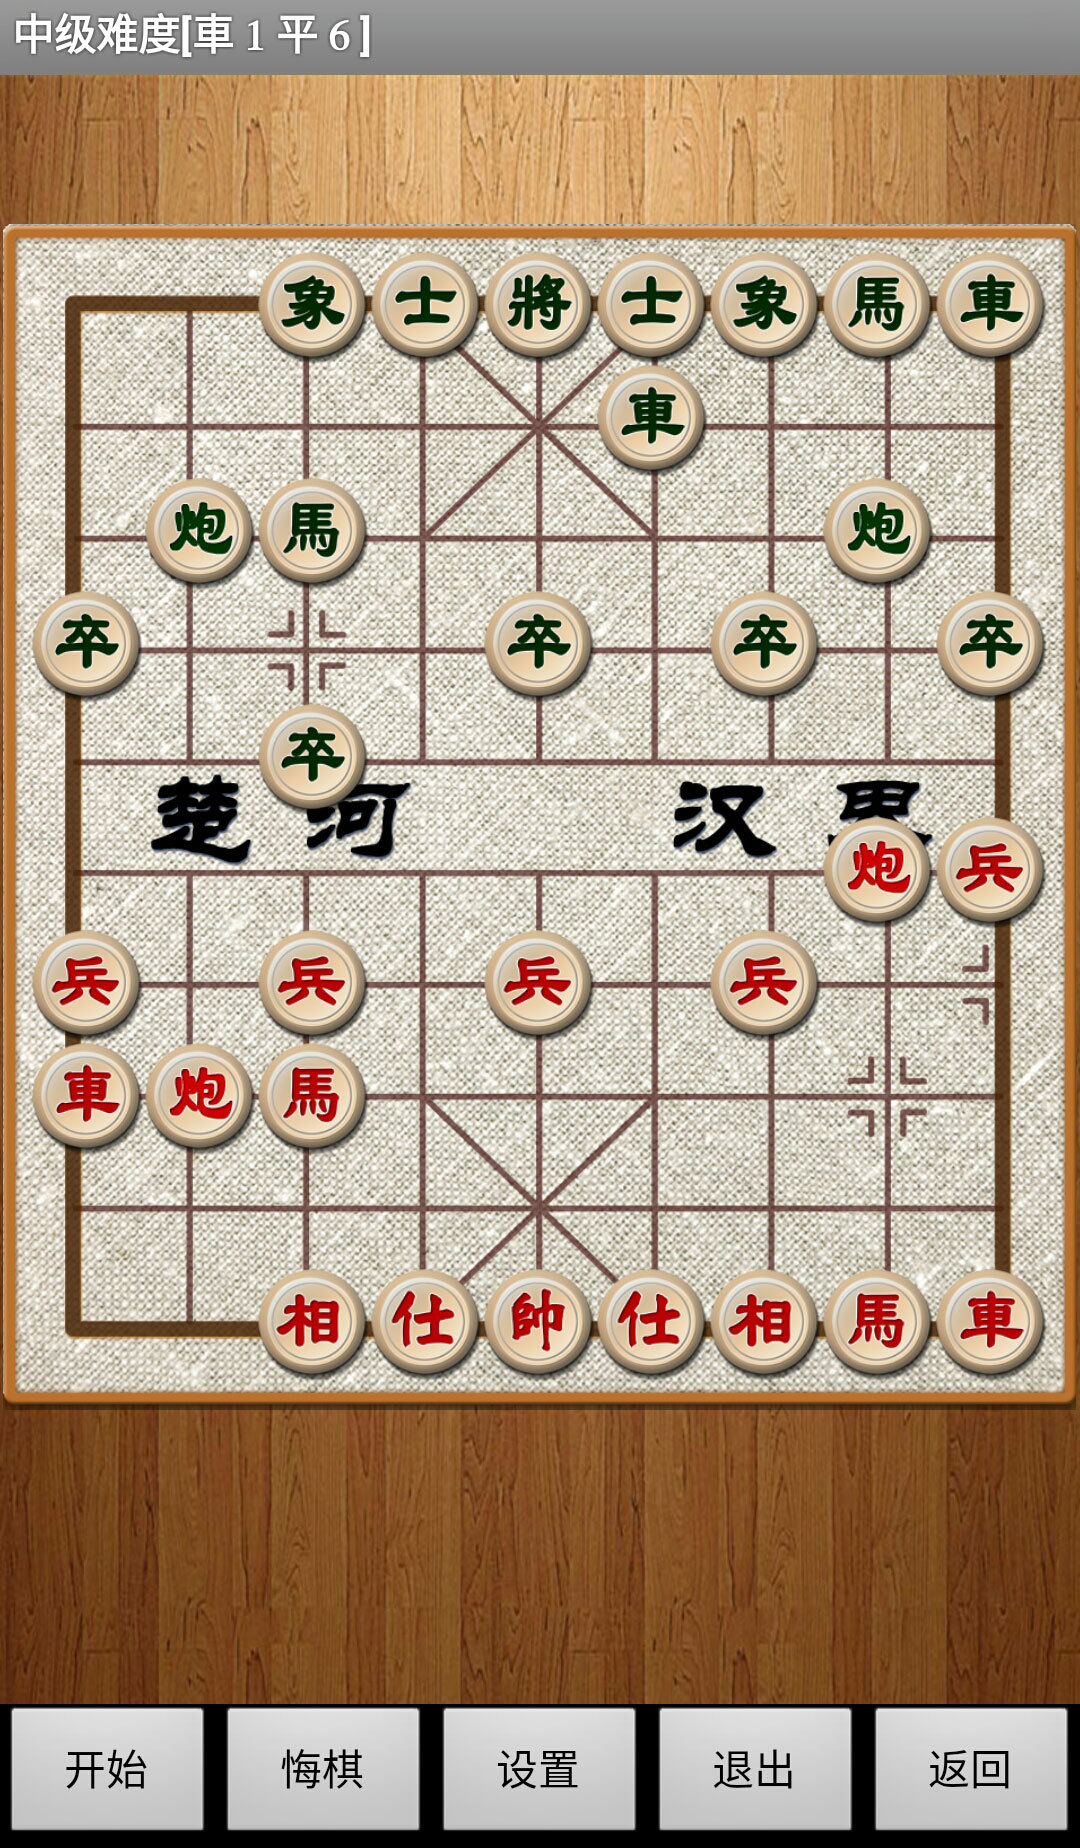 经典中国象棋